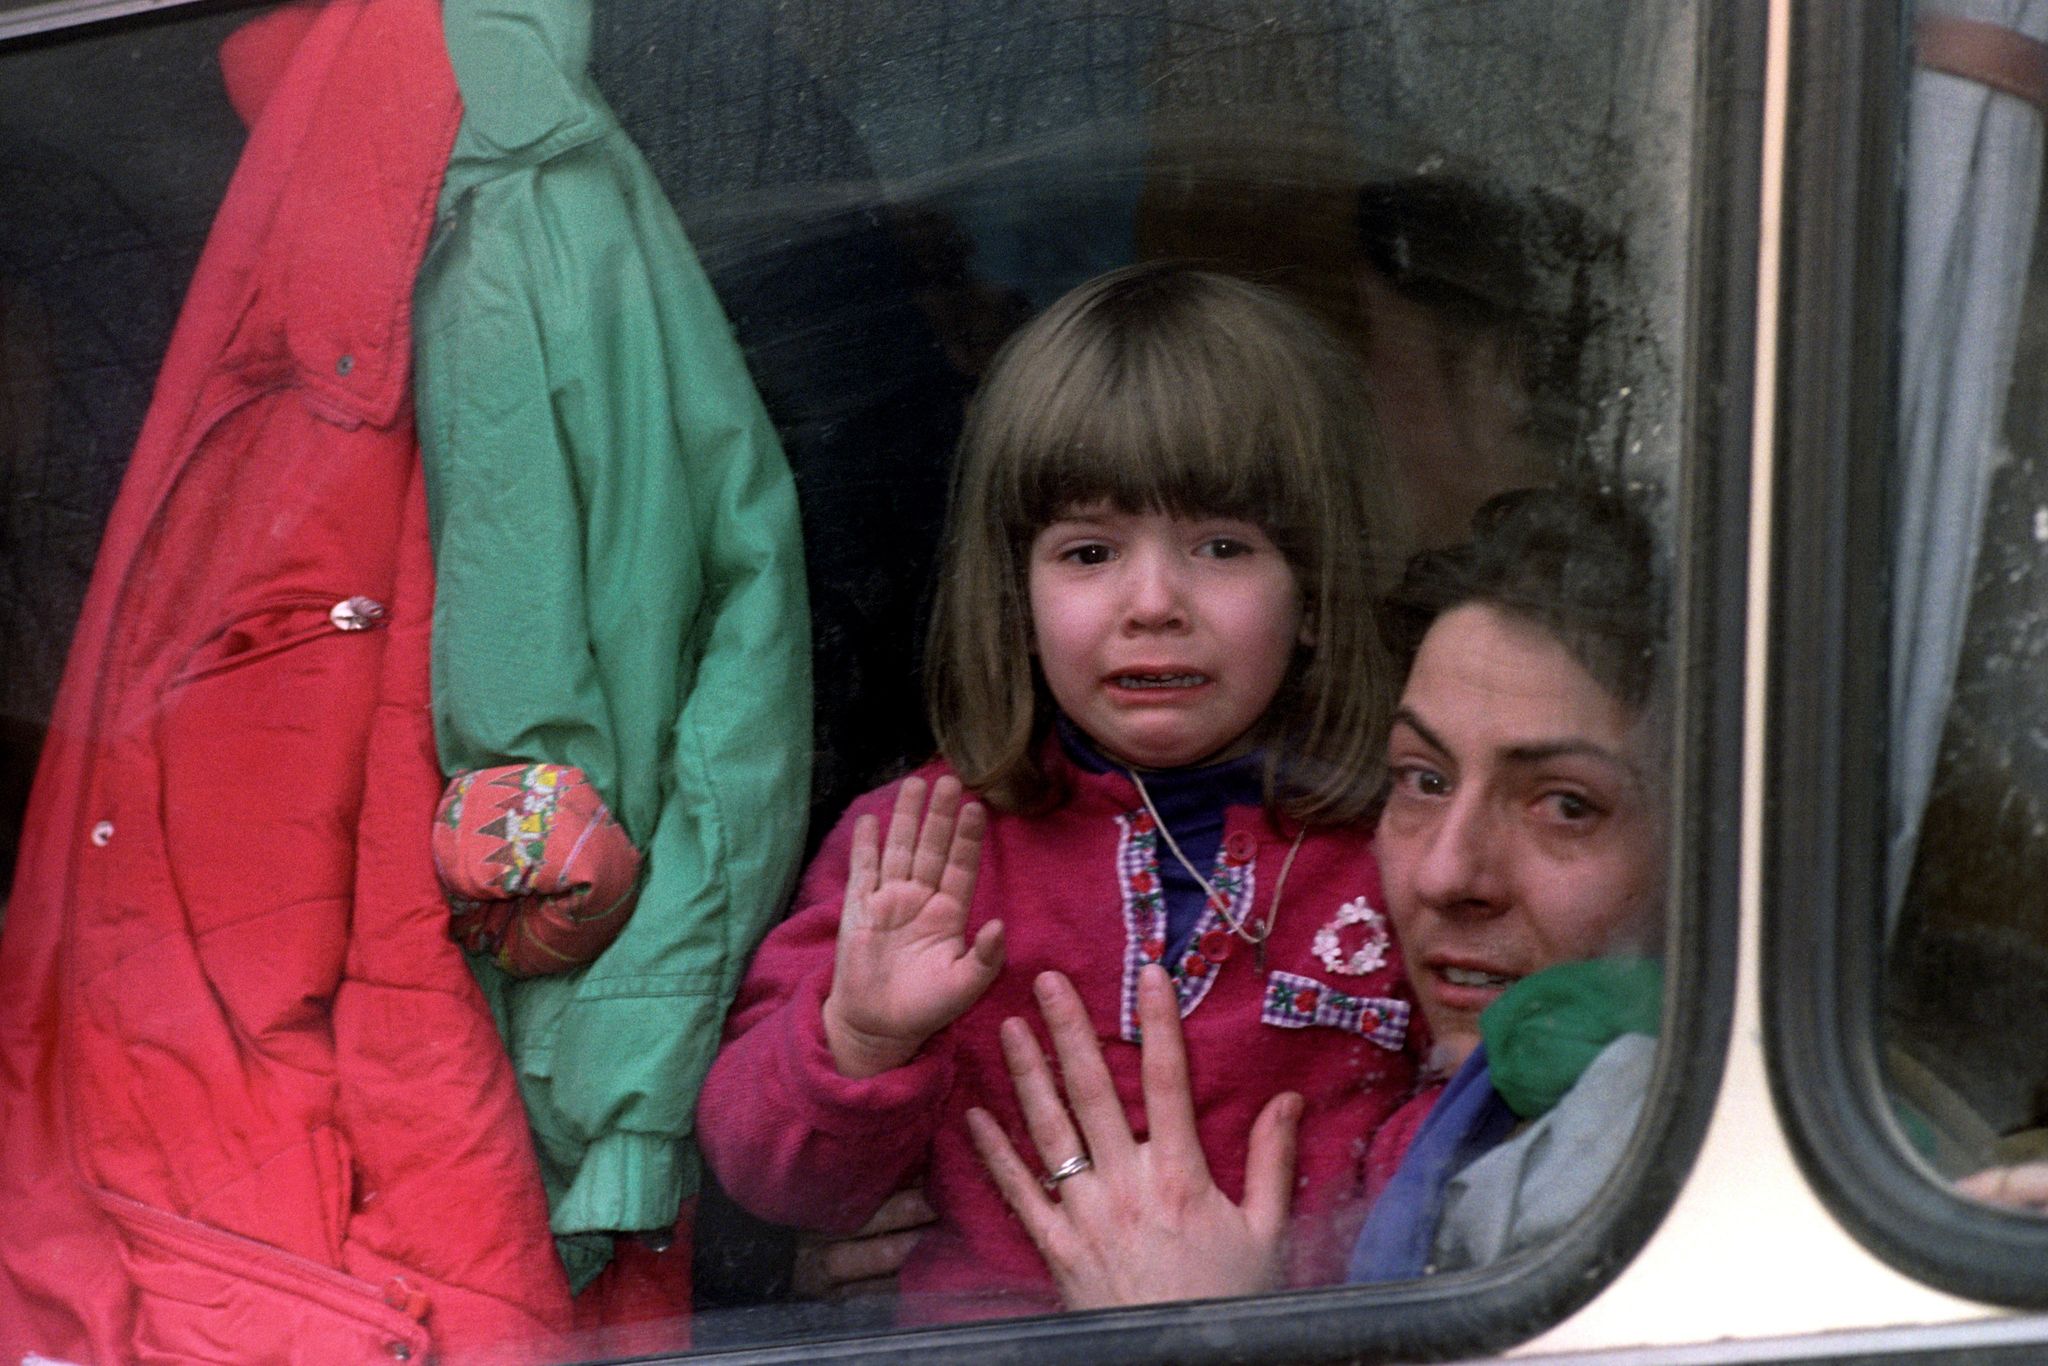 Δράμα: Δείτε πως είναι σήμερα το κοριτσάκι αυτής της φωτογραφίας που τραβήχτηκε στο Σεράγεβο